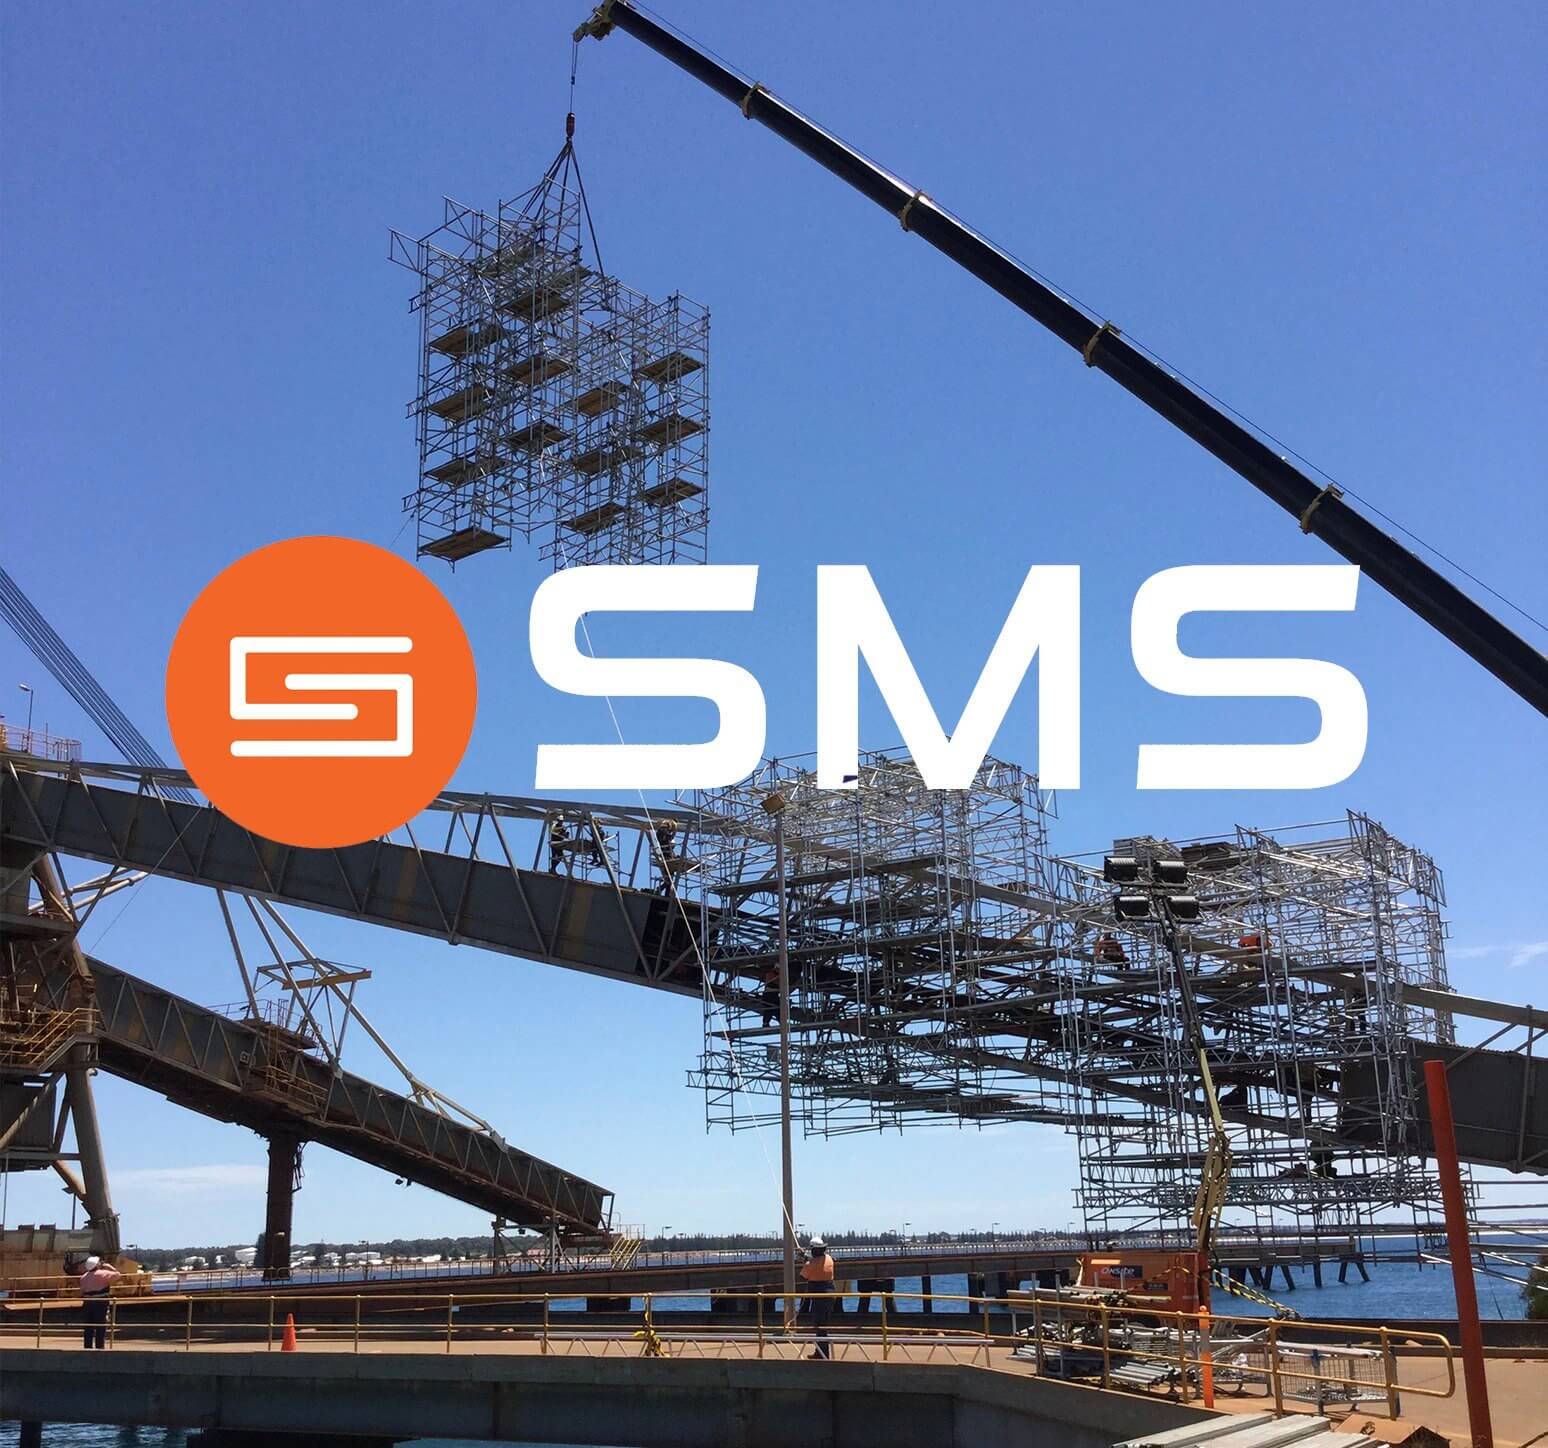 Esperance crane lift and SMS brand logo.